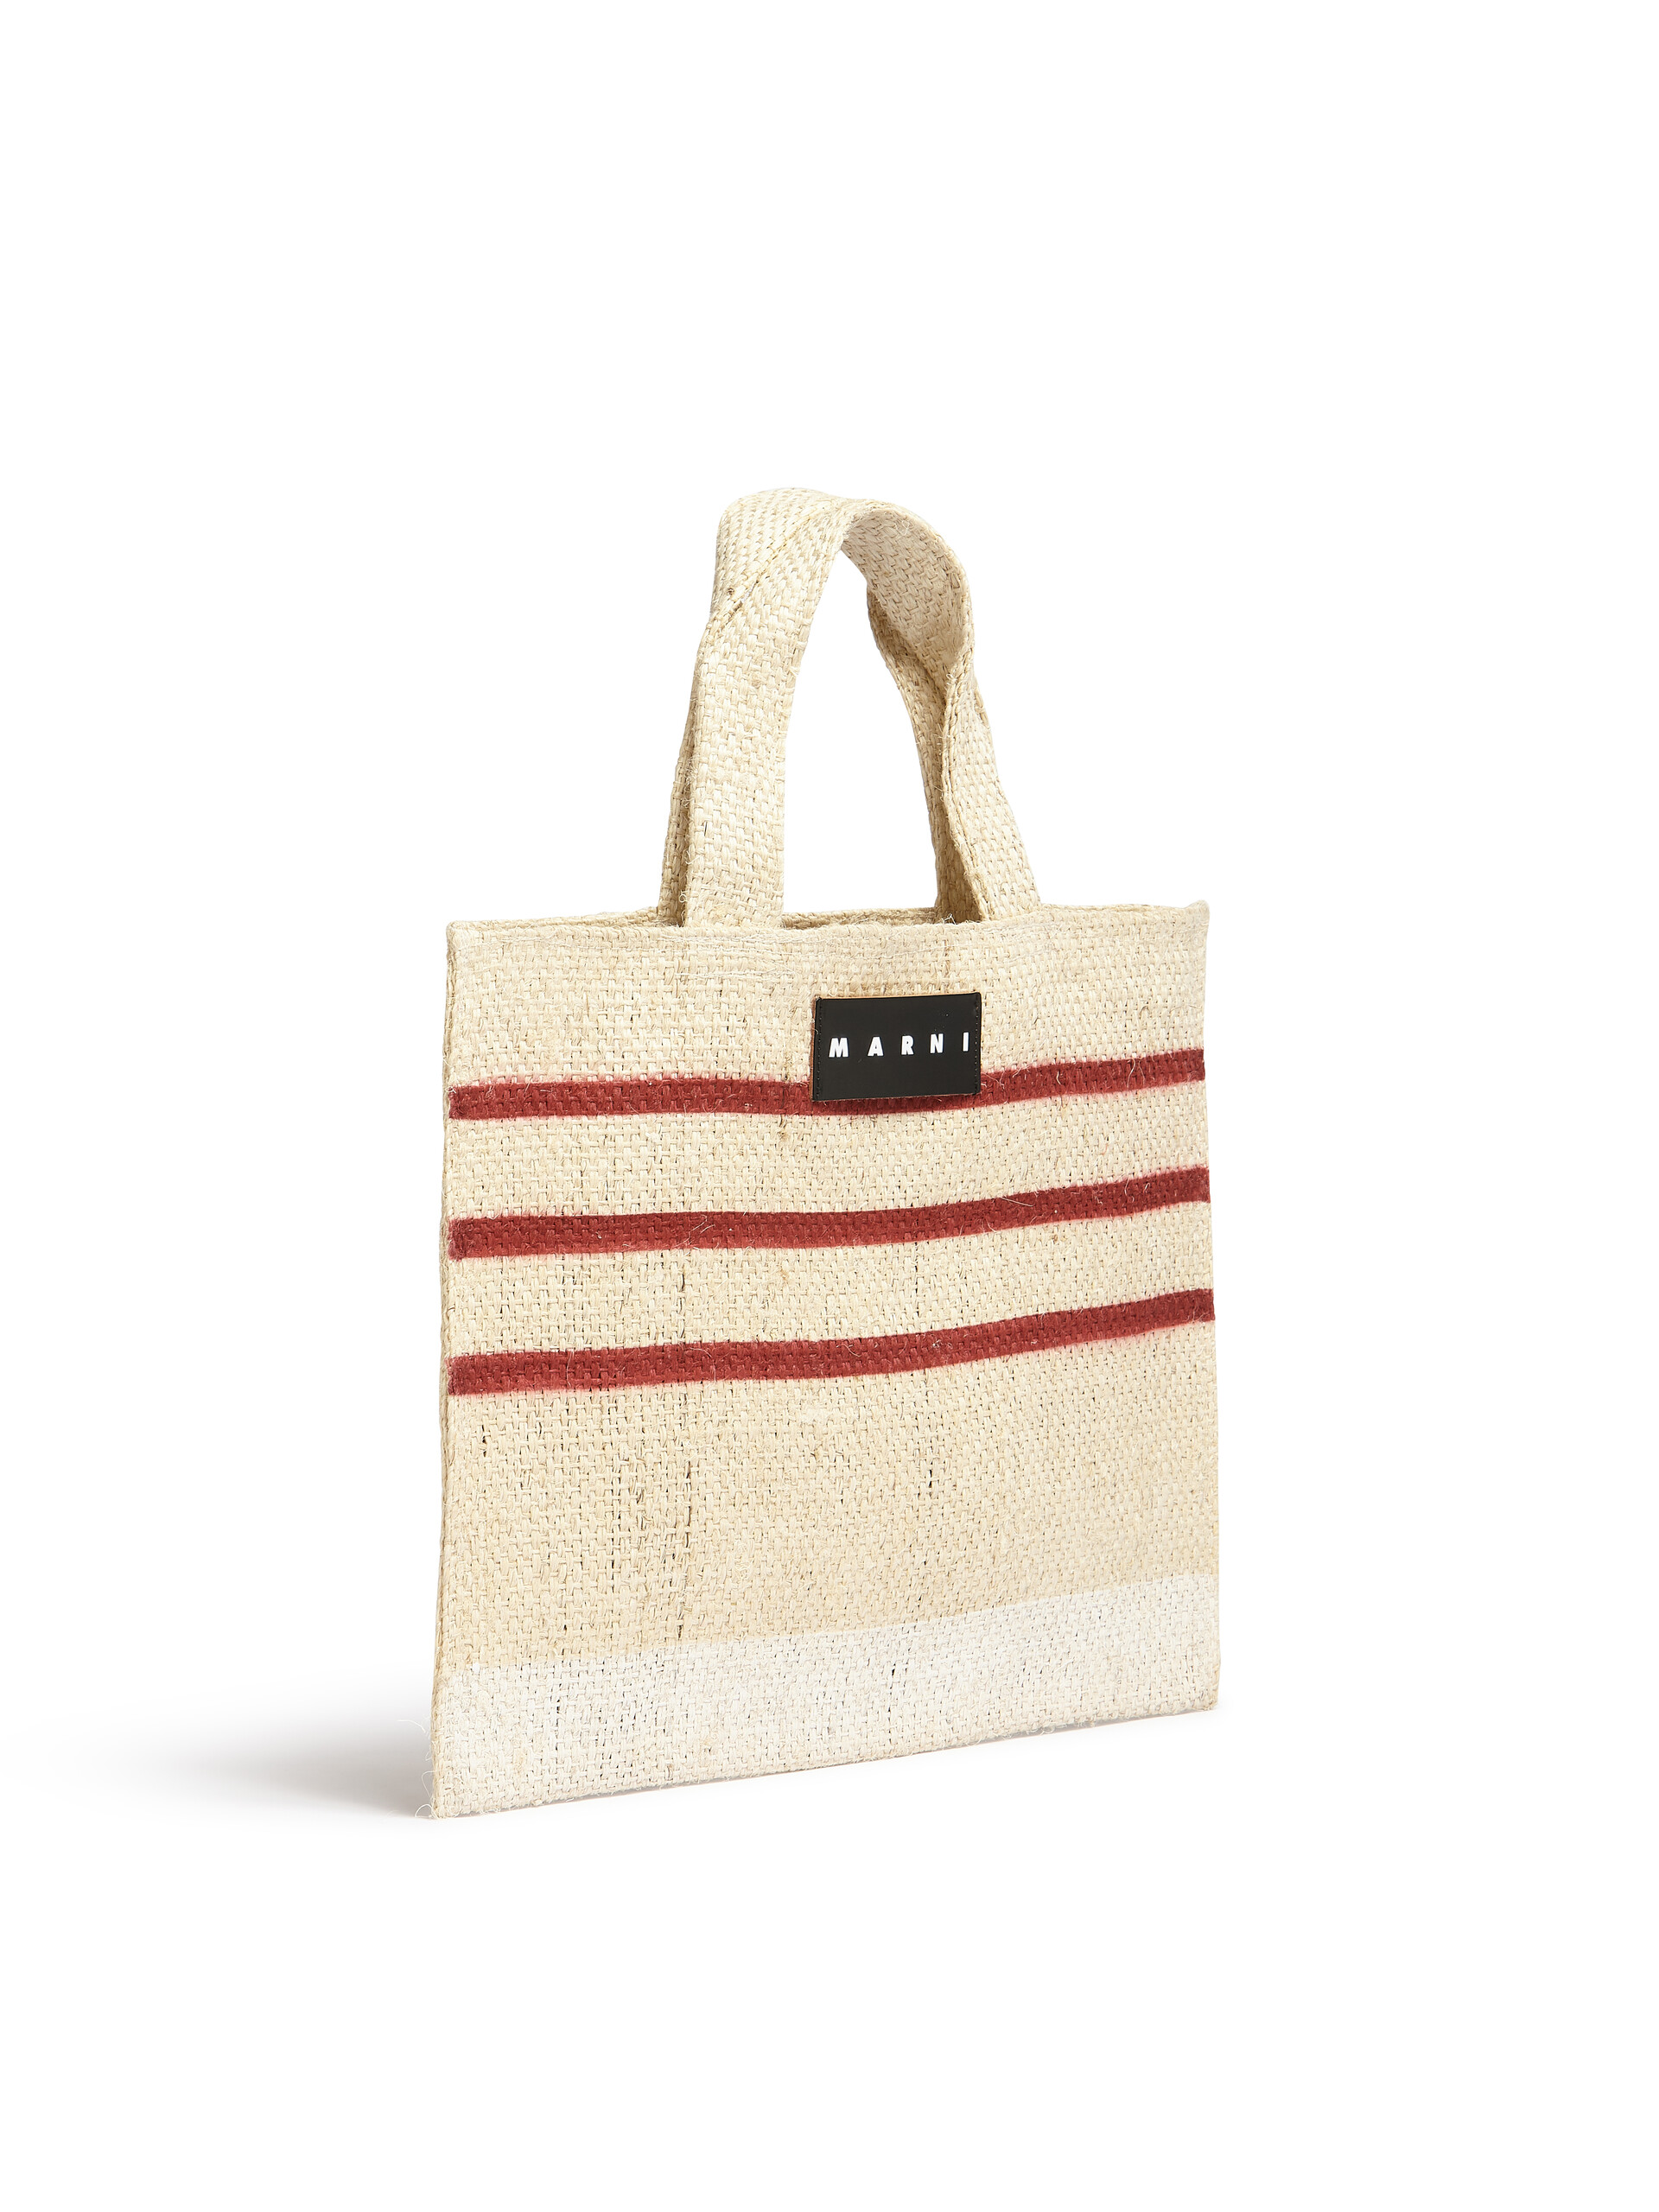 MARNI MARKET CANAPA small bag in black and orange natural fiber - Shopping Bags - Image 2